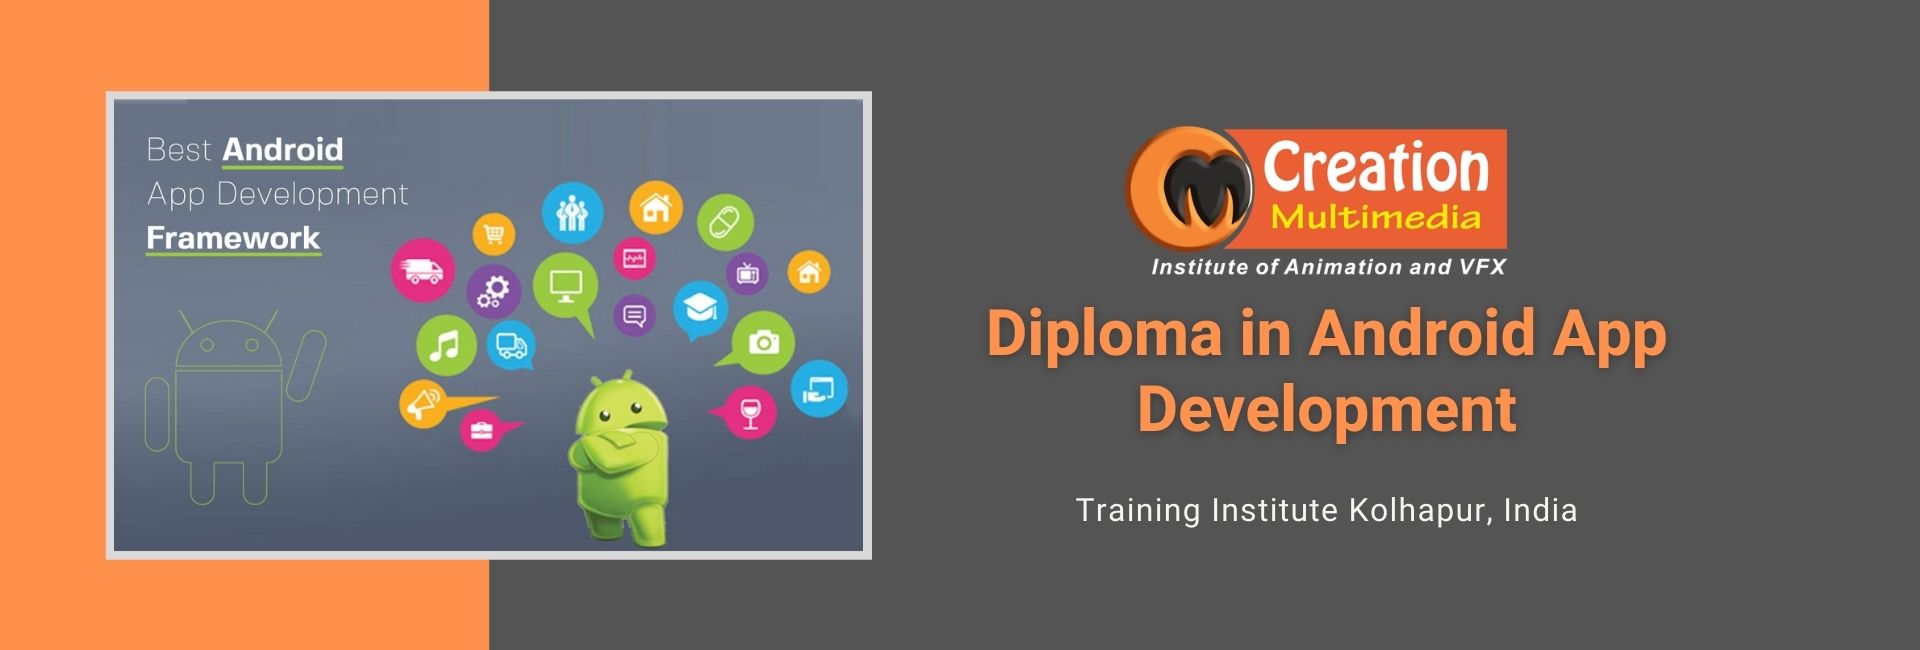 Android APP Development Course Training Institute Kolhapur